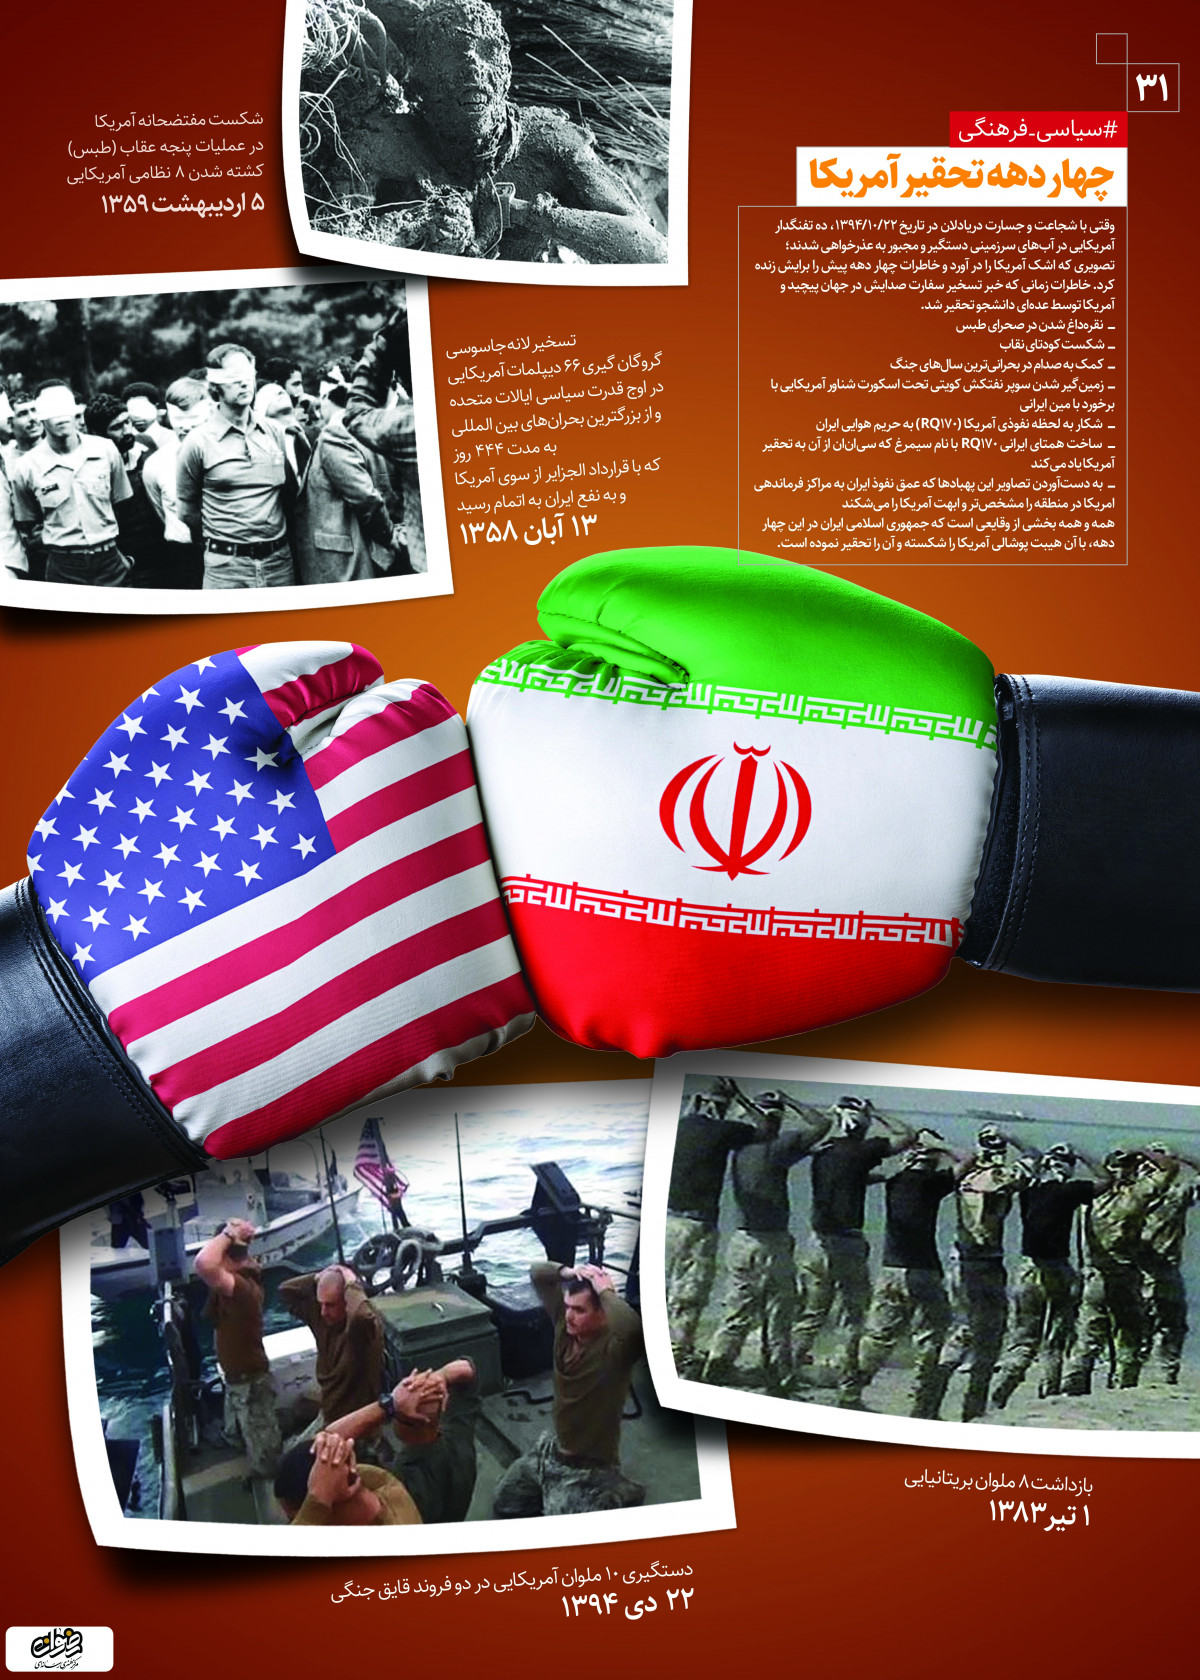 پوستردستاوردهای انقلاب اسلامی چهارده تحقیر آمریکا